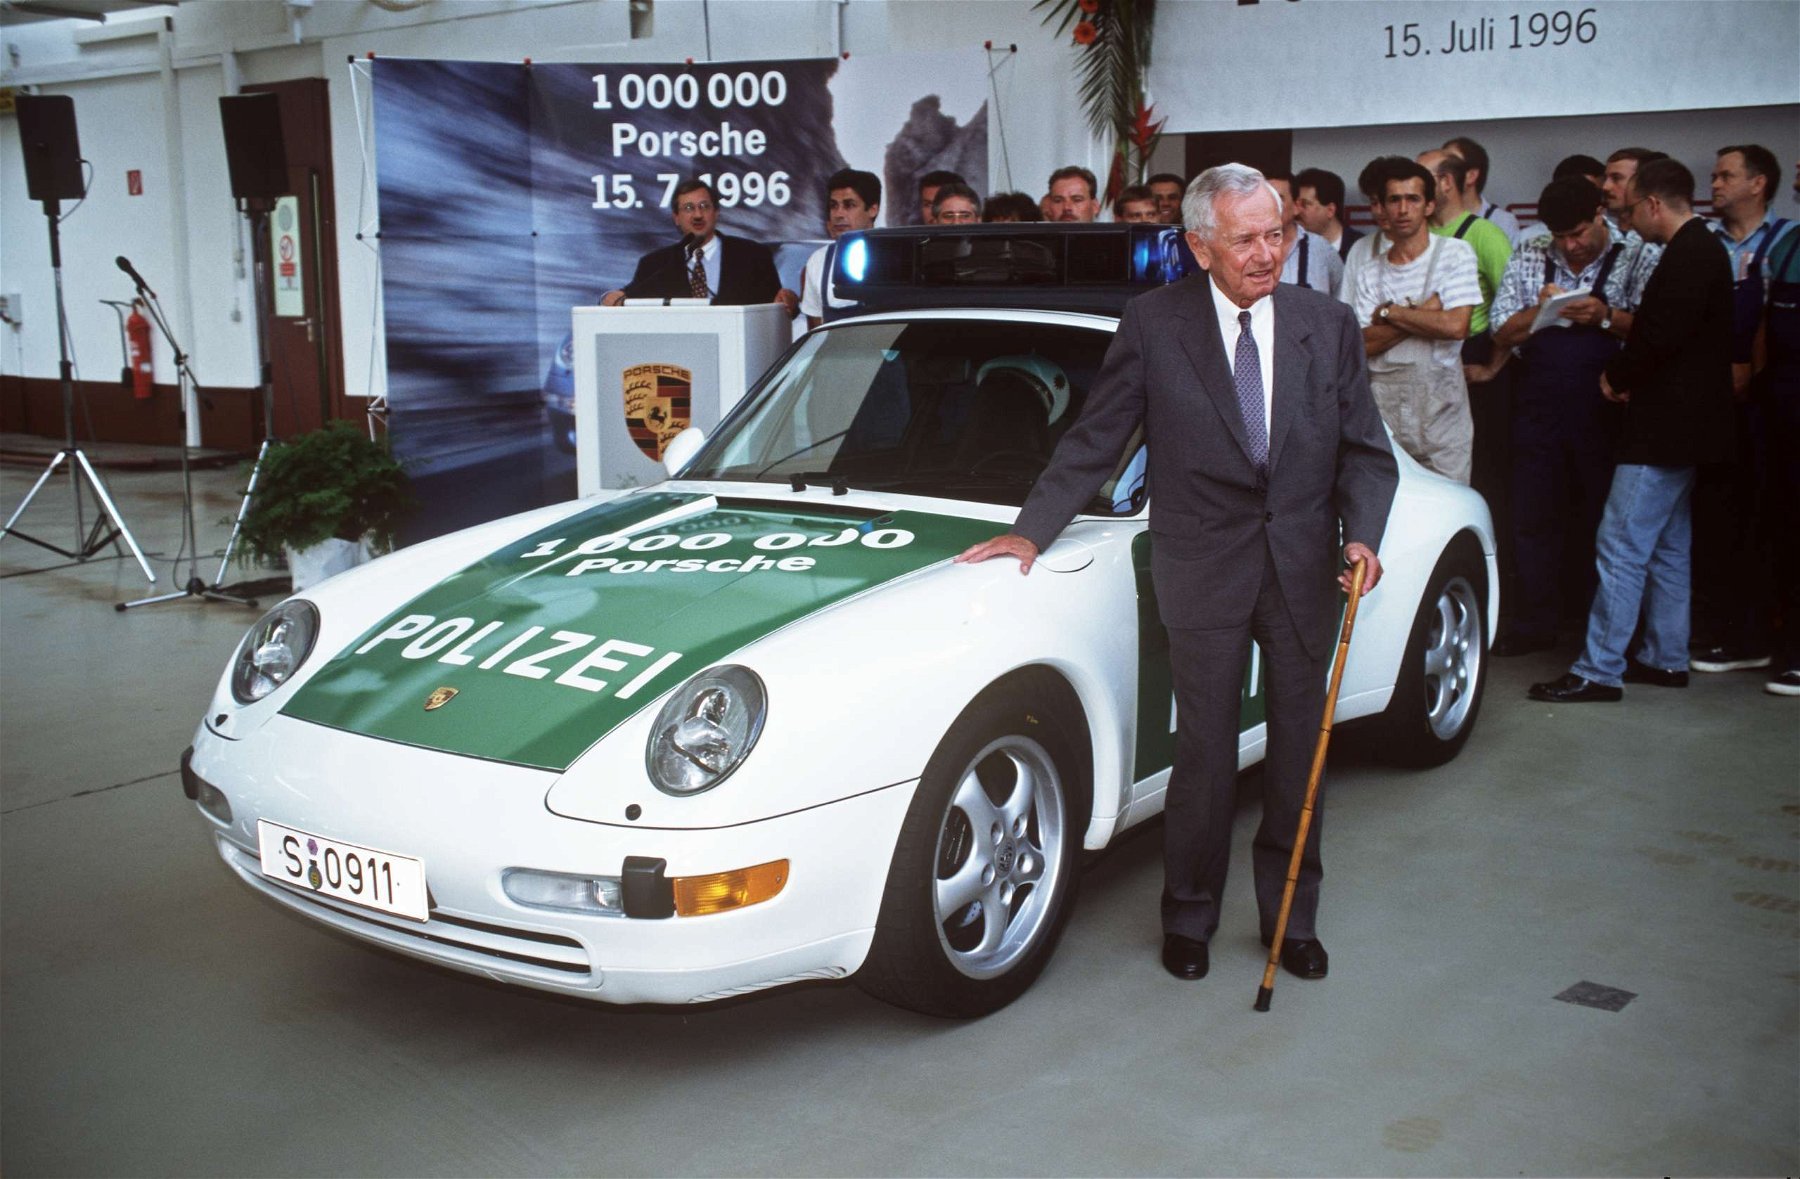 Ferry Porsche vor dem Fahrzeug Nummer 1000000 aus dem Hause Porsche am 15.07.1996